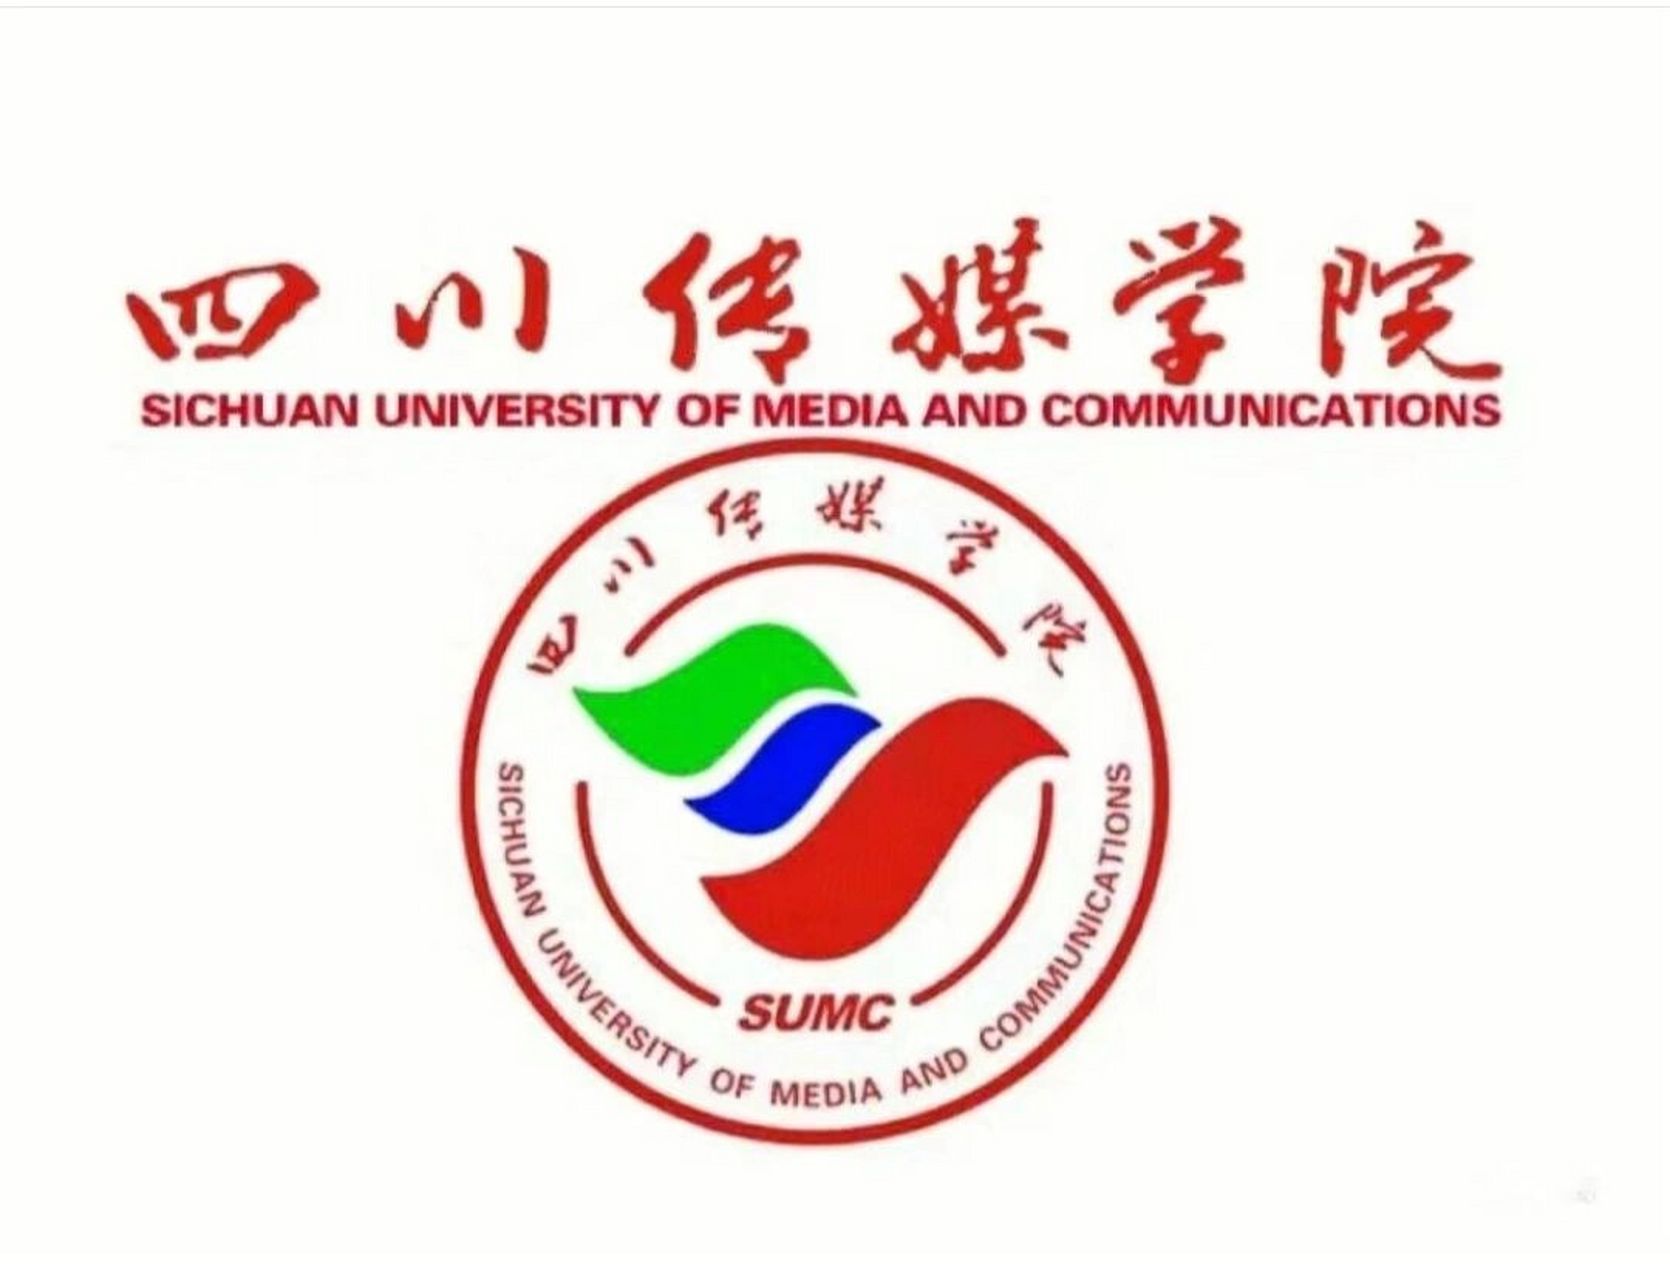 四川传媒学院logo高清图片